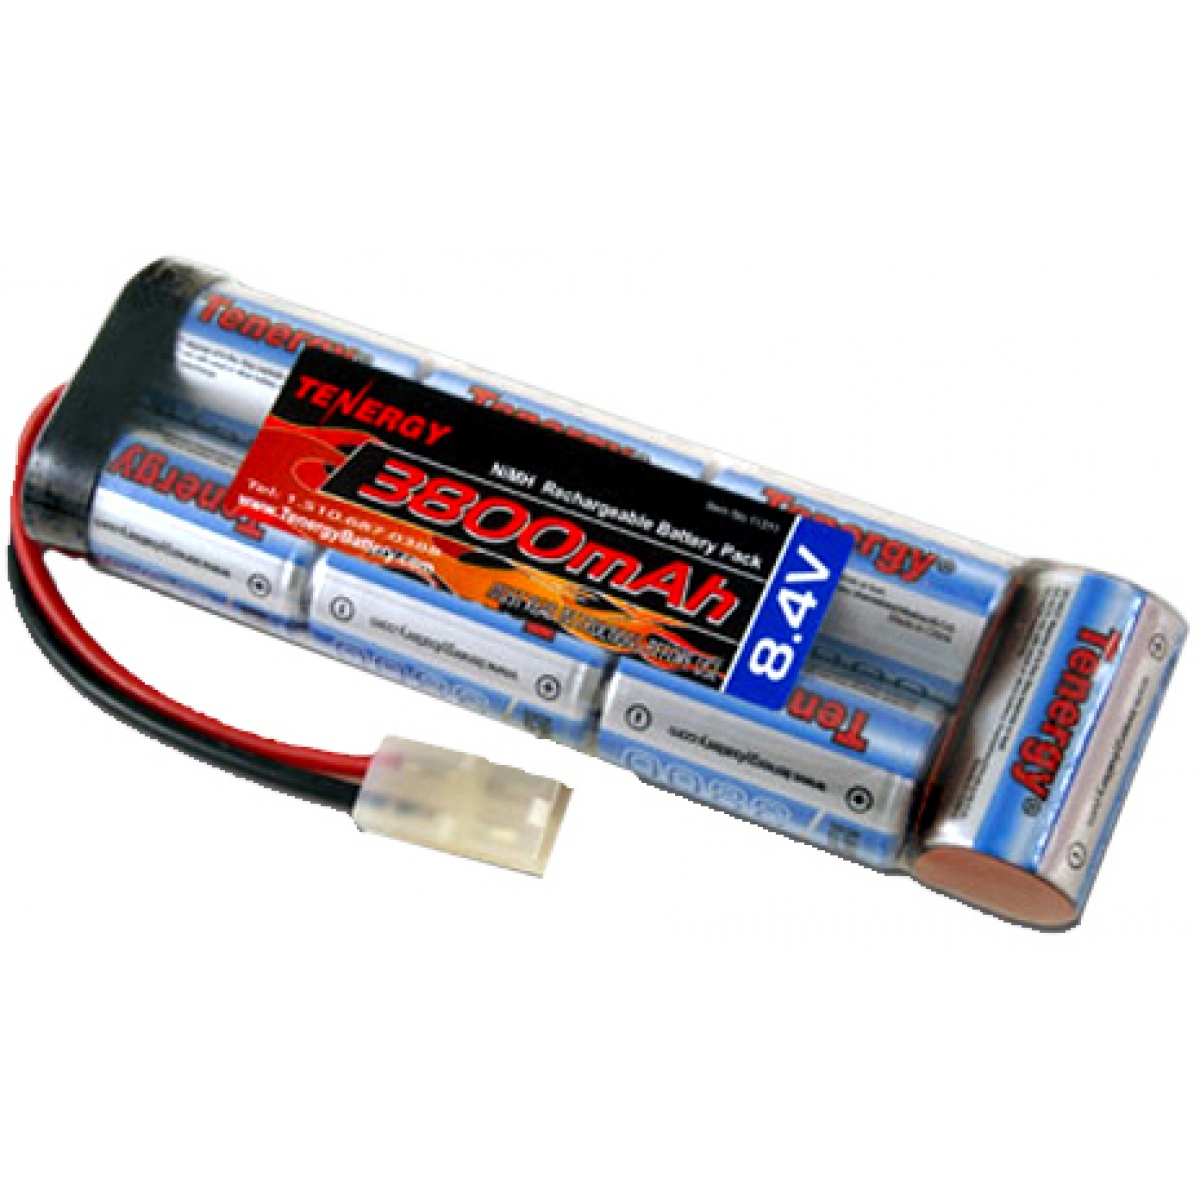 Battery Packs - NiMH-NiCD Packs - 8.4V - Tenergy Power